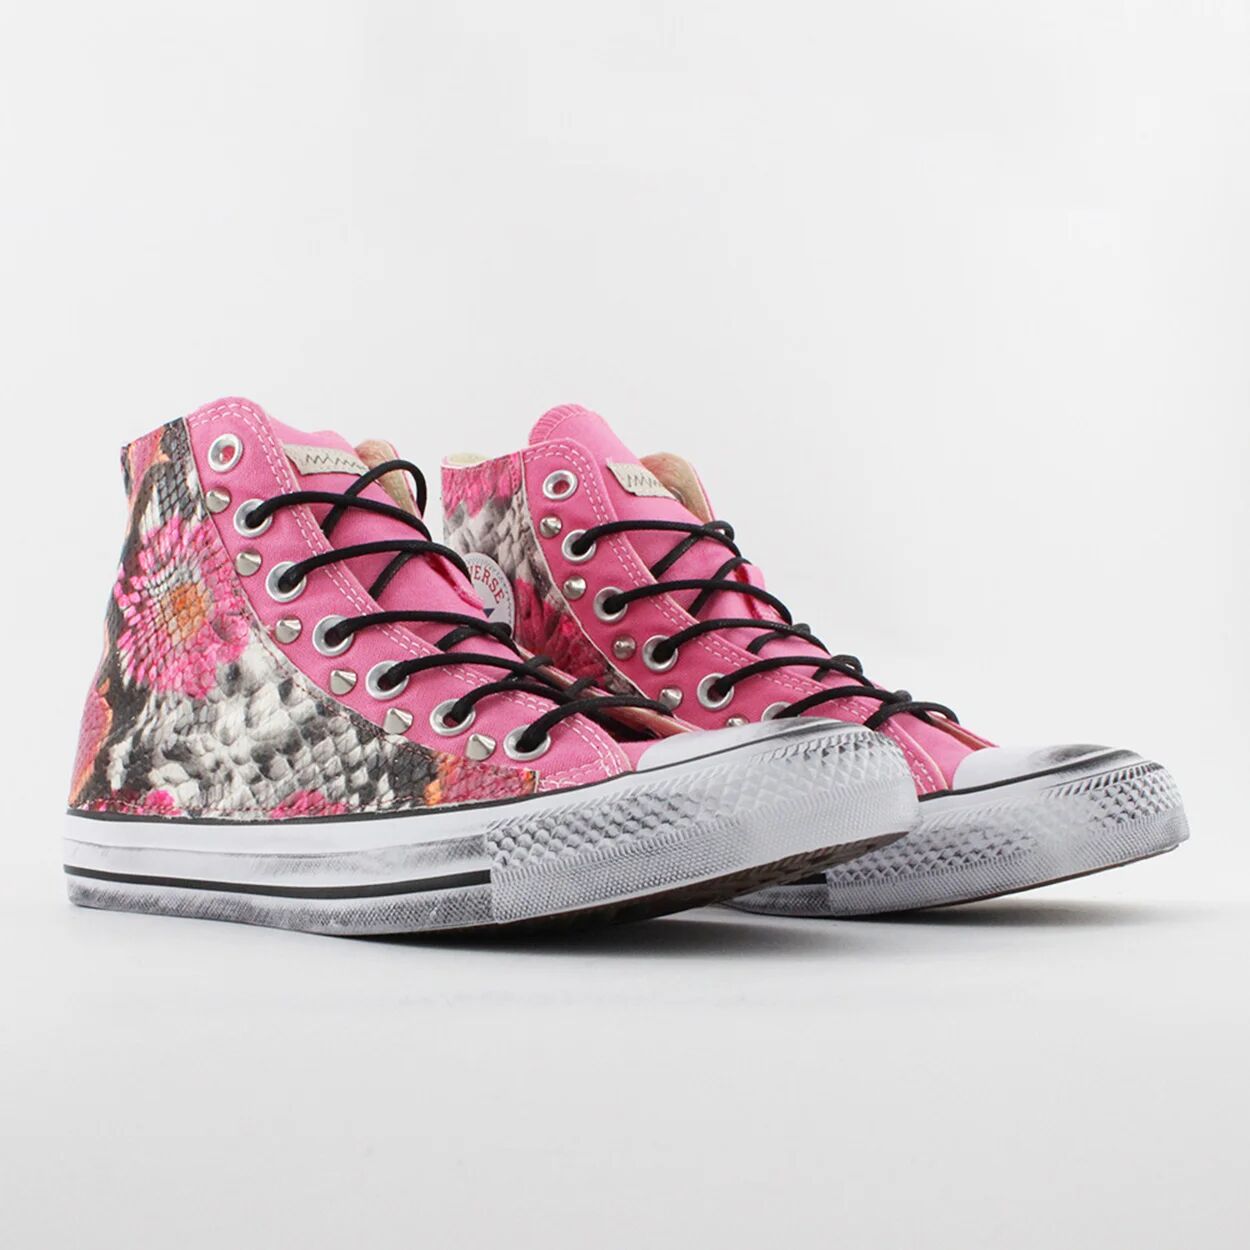 Mimanera CONVERSE ALL STAR Sneakers in tela con stampa fiori rosa